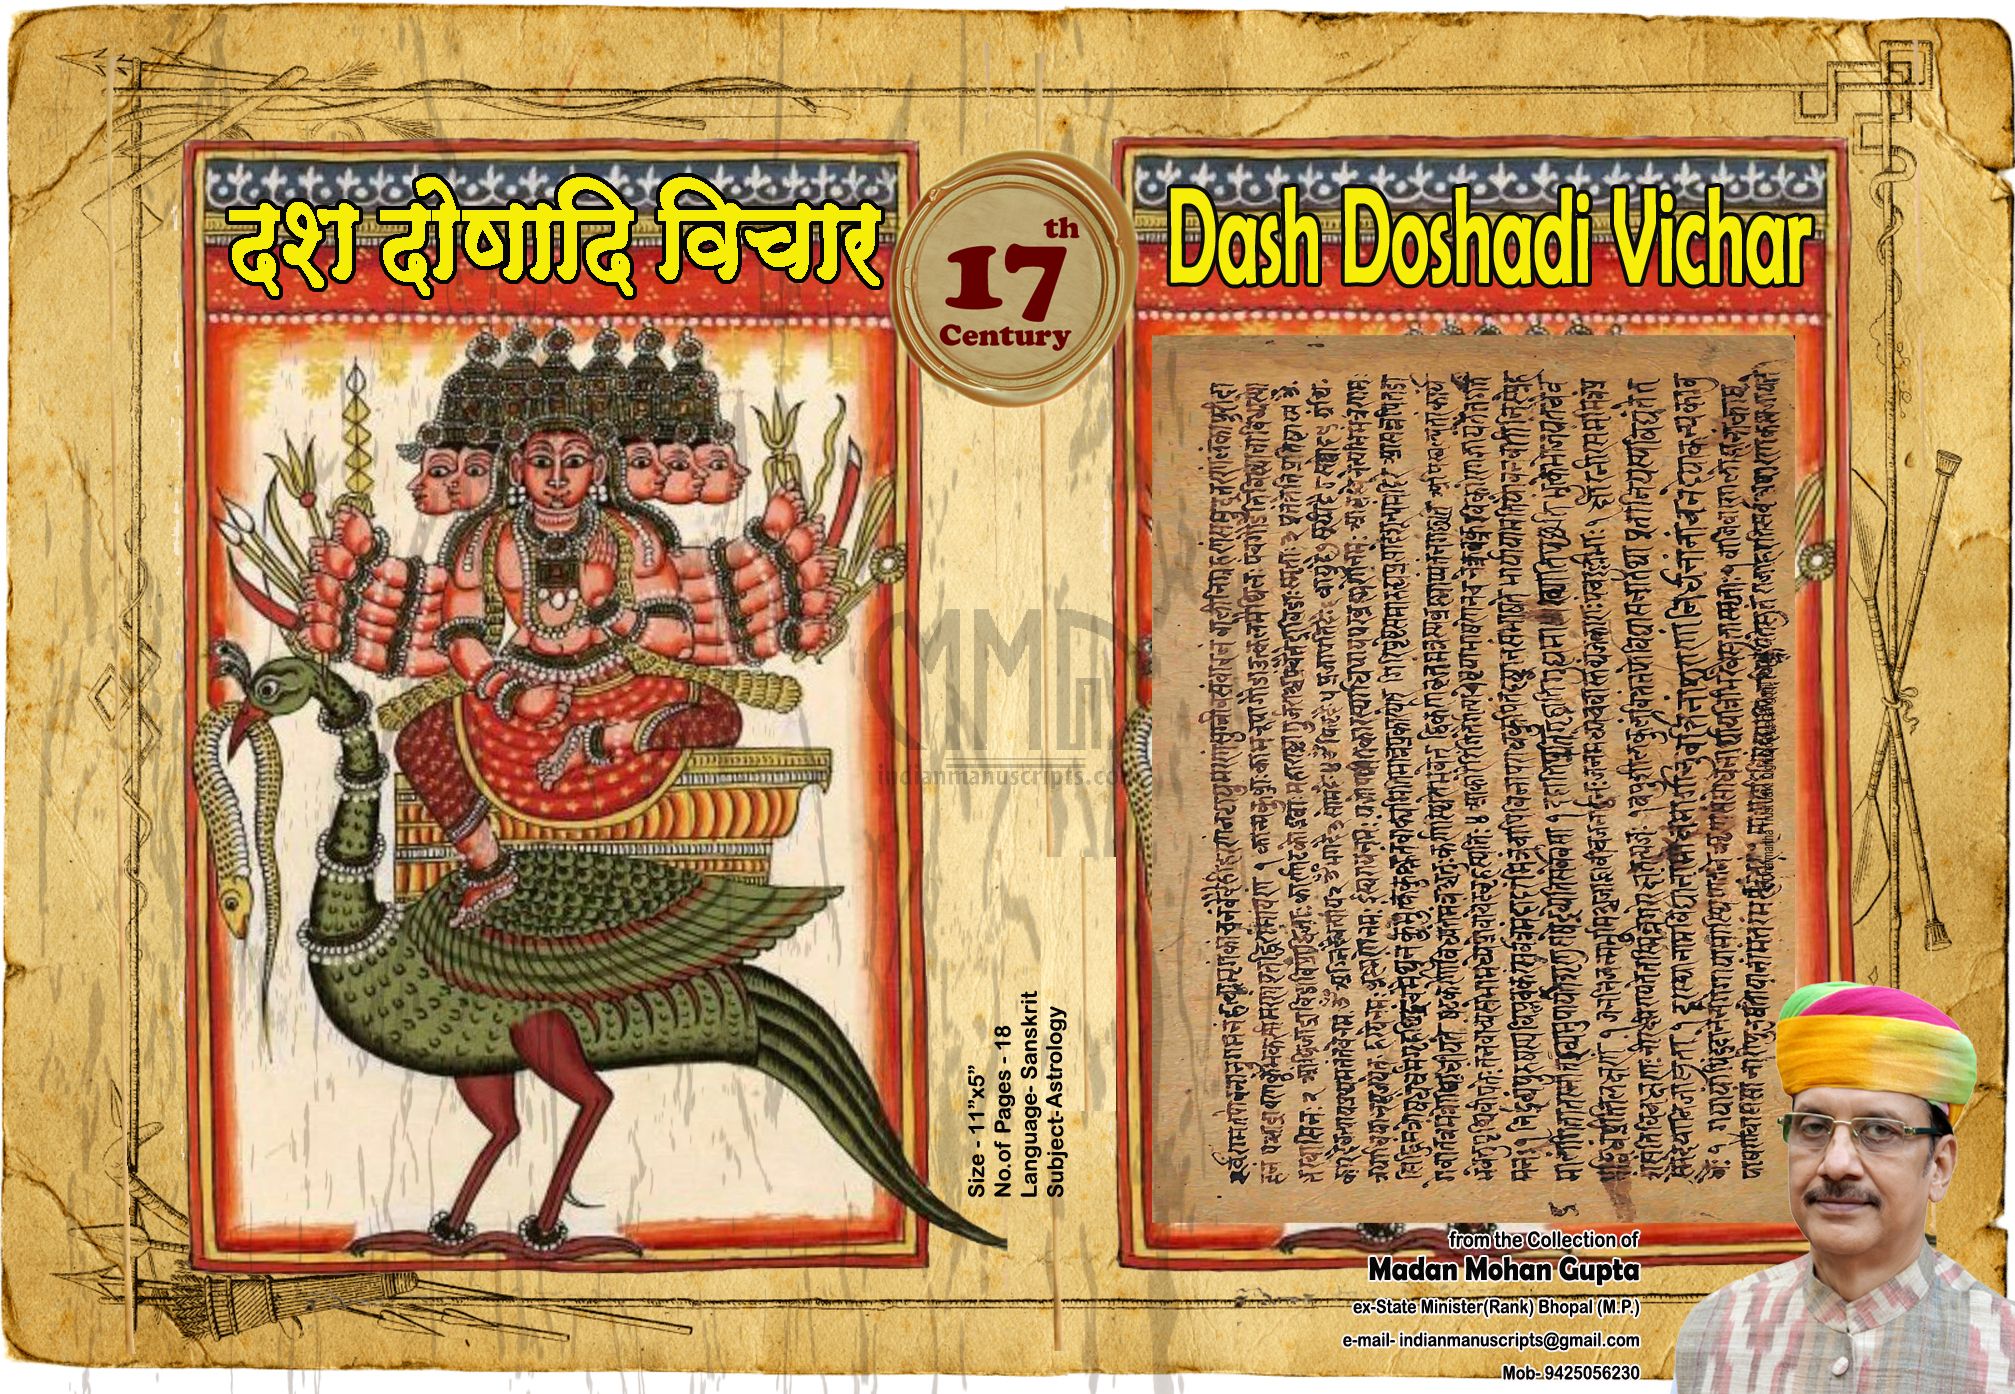 Dash Doshadi Vichar